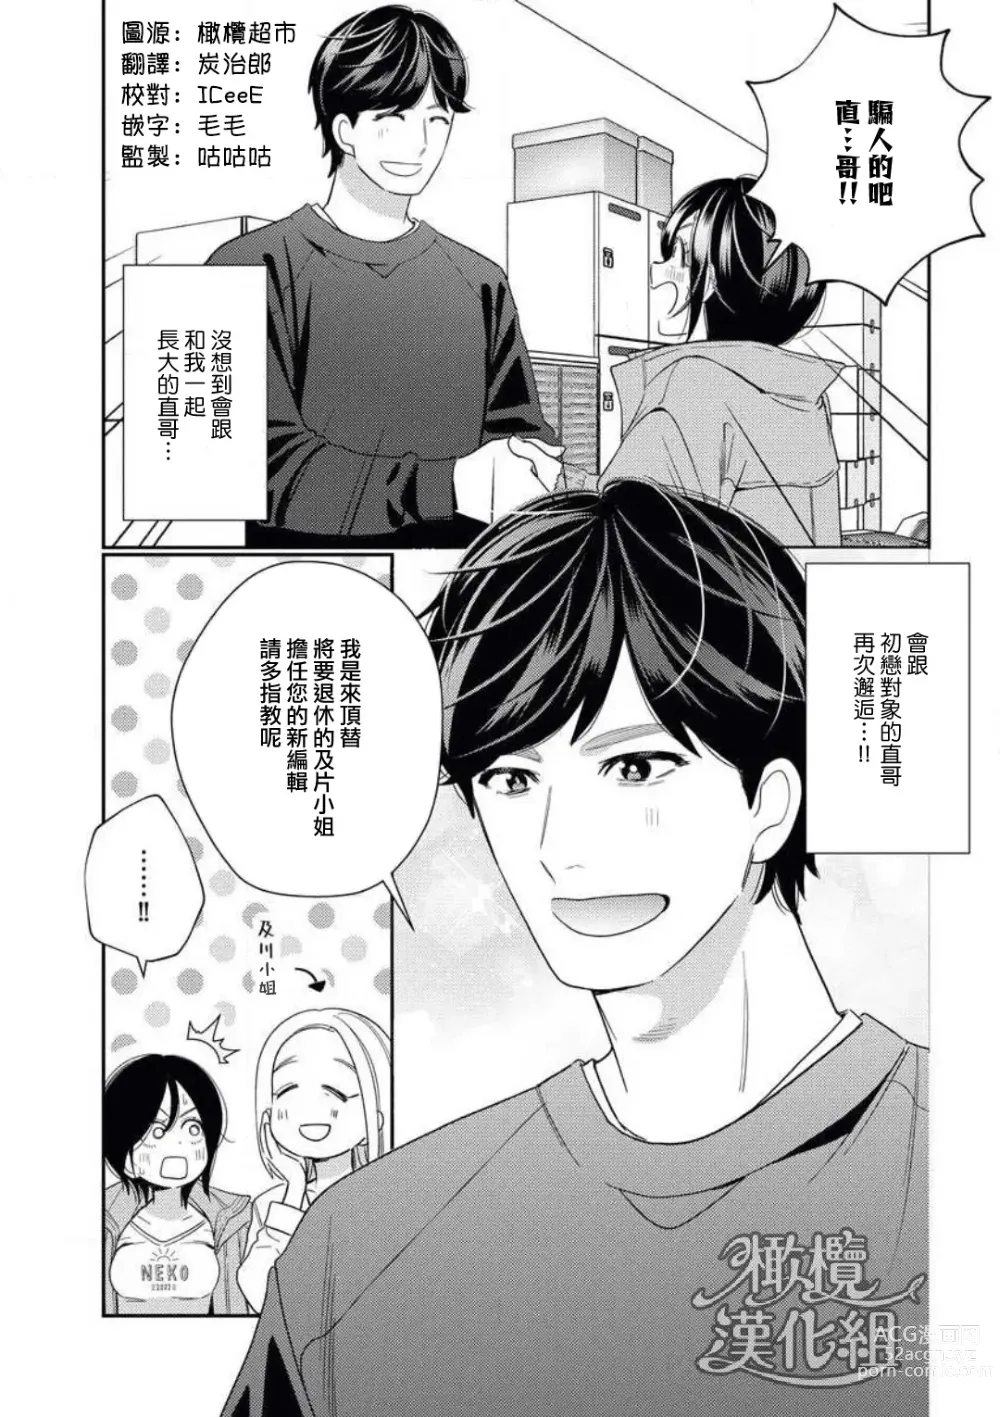 Page 3 of manga 青梅竹马难以攻陷被小黄话（※正当工作需求）玩弄一番